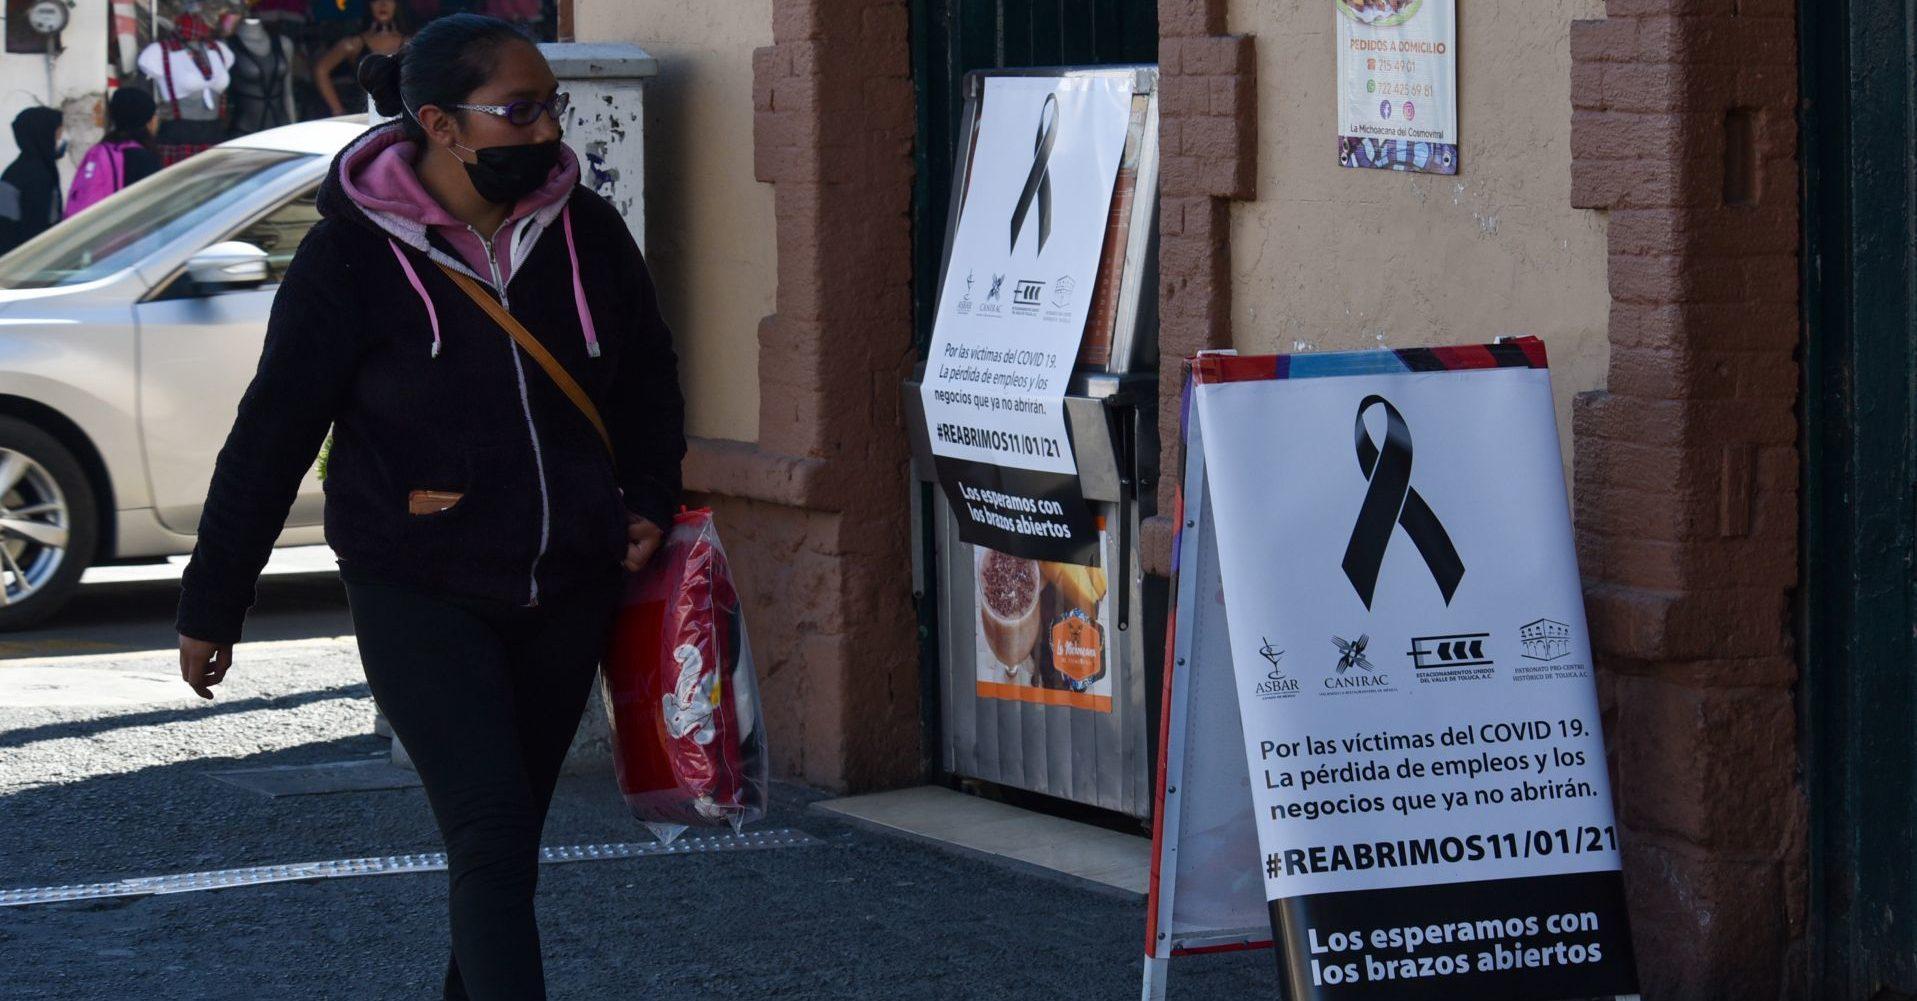 Empleos recuperados en México durante la pandemia son eventuales y mal pagados